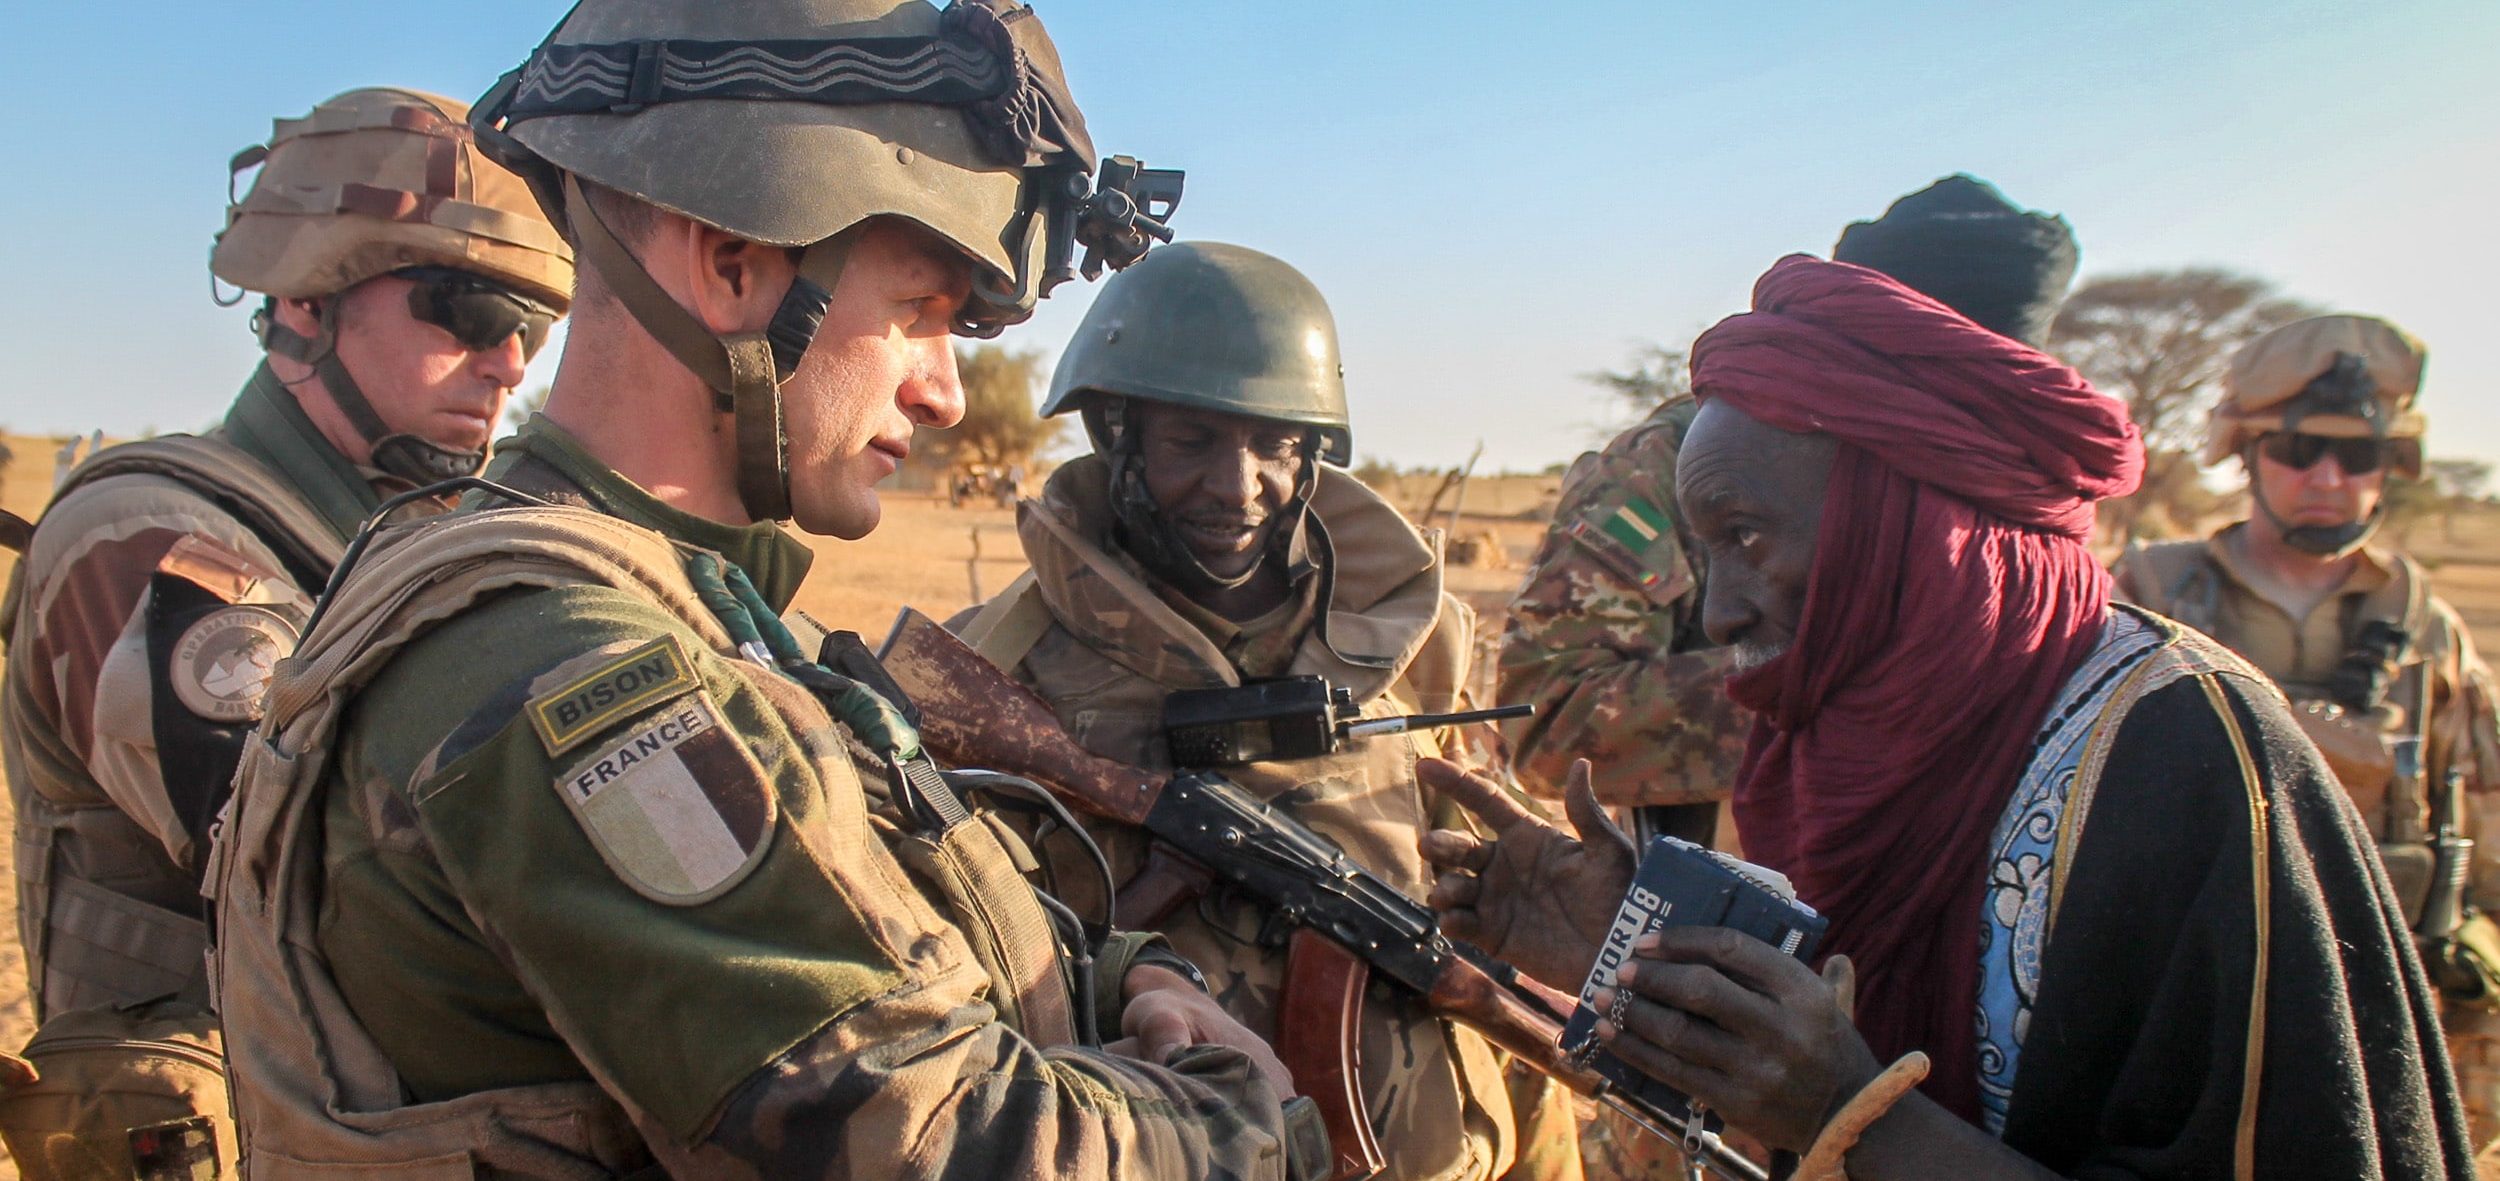 Des militaires français du 126e régiment d'infanterie et des militaires maliens, le 17 mars 2016. c : TM1972